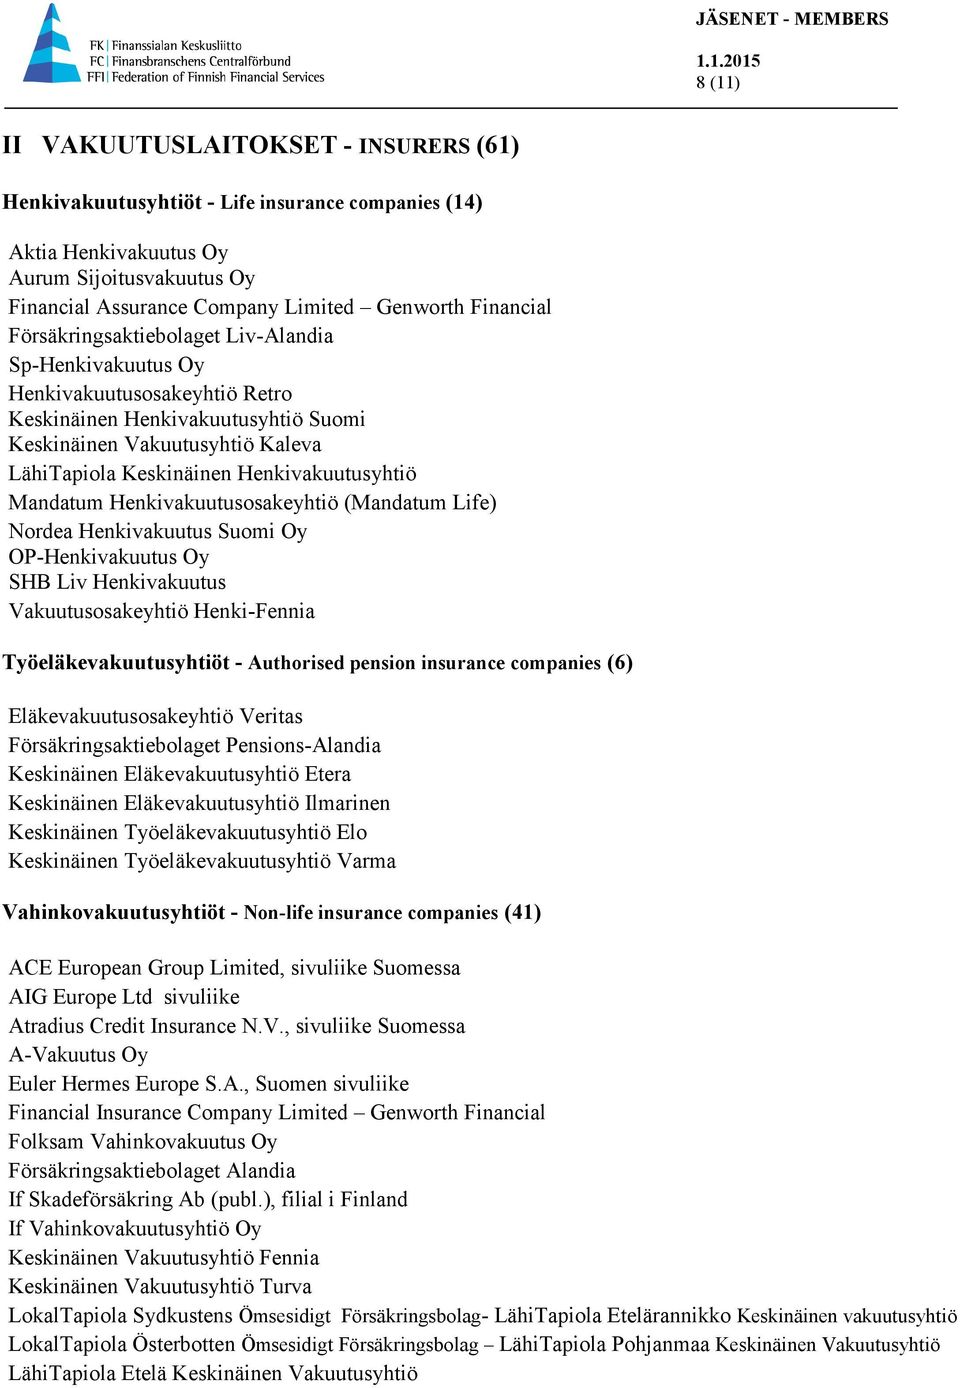 Mandatum Henkivakuutusosakeyhtiö (Mandatum Life) Nordea Henkivakuutus Suomi Oy OP-Henkivakuutus Oy SHB Liv Henkivakuutus Vakuutusosakeyhtiö Henki-Fennia Työeläkevakuutusyhtiöt - Authorised pension